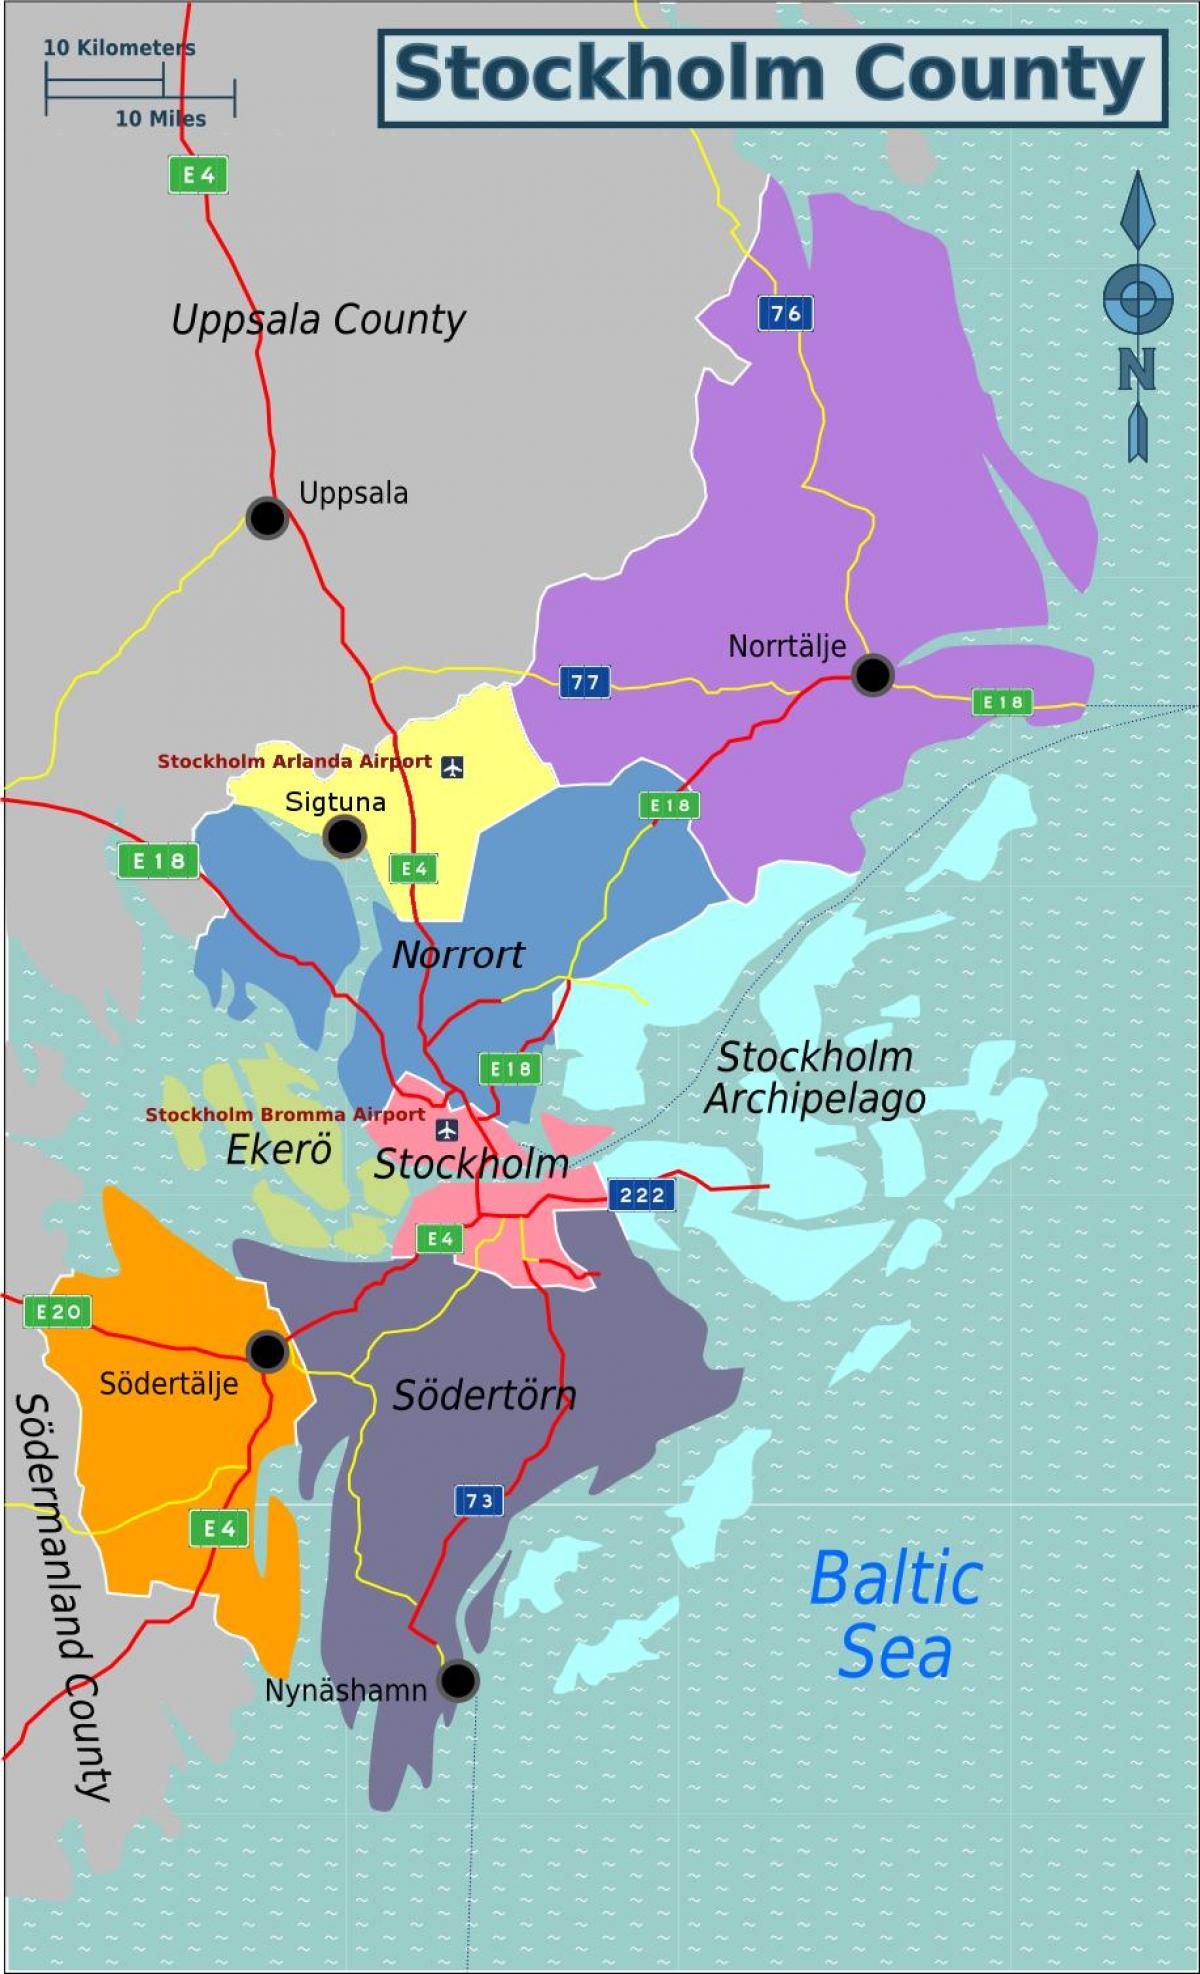 מפה של שבדיה סטוקהולם באזור